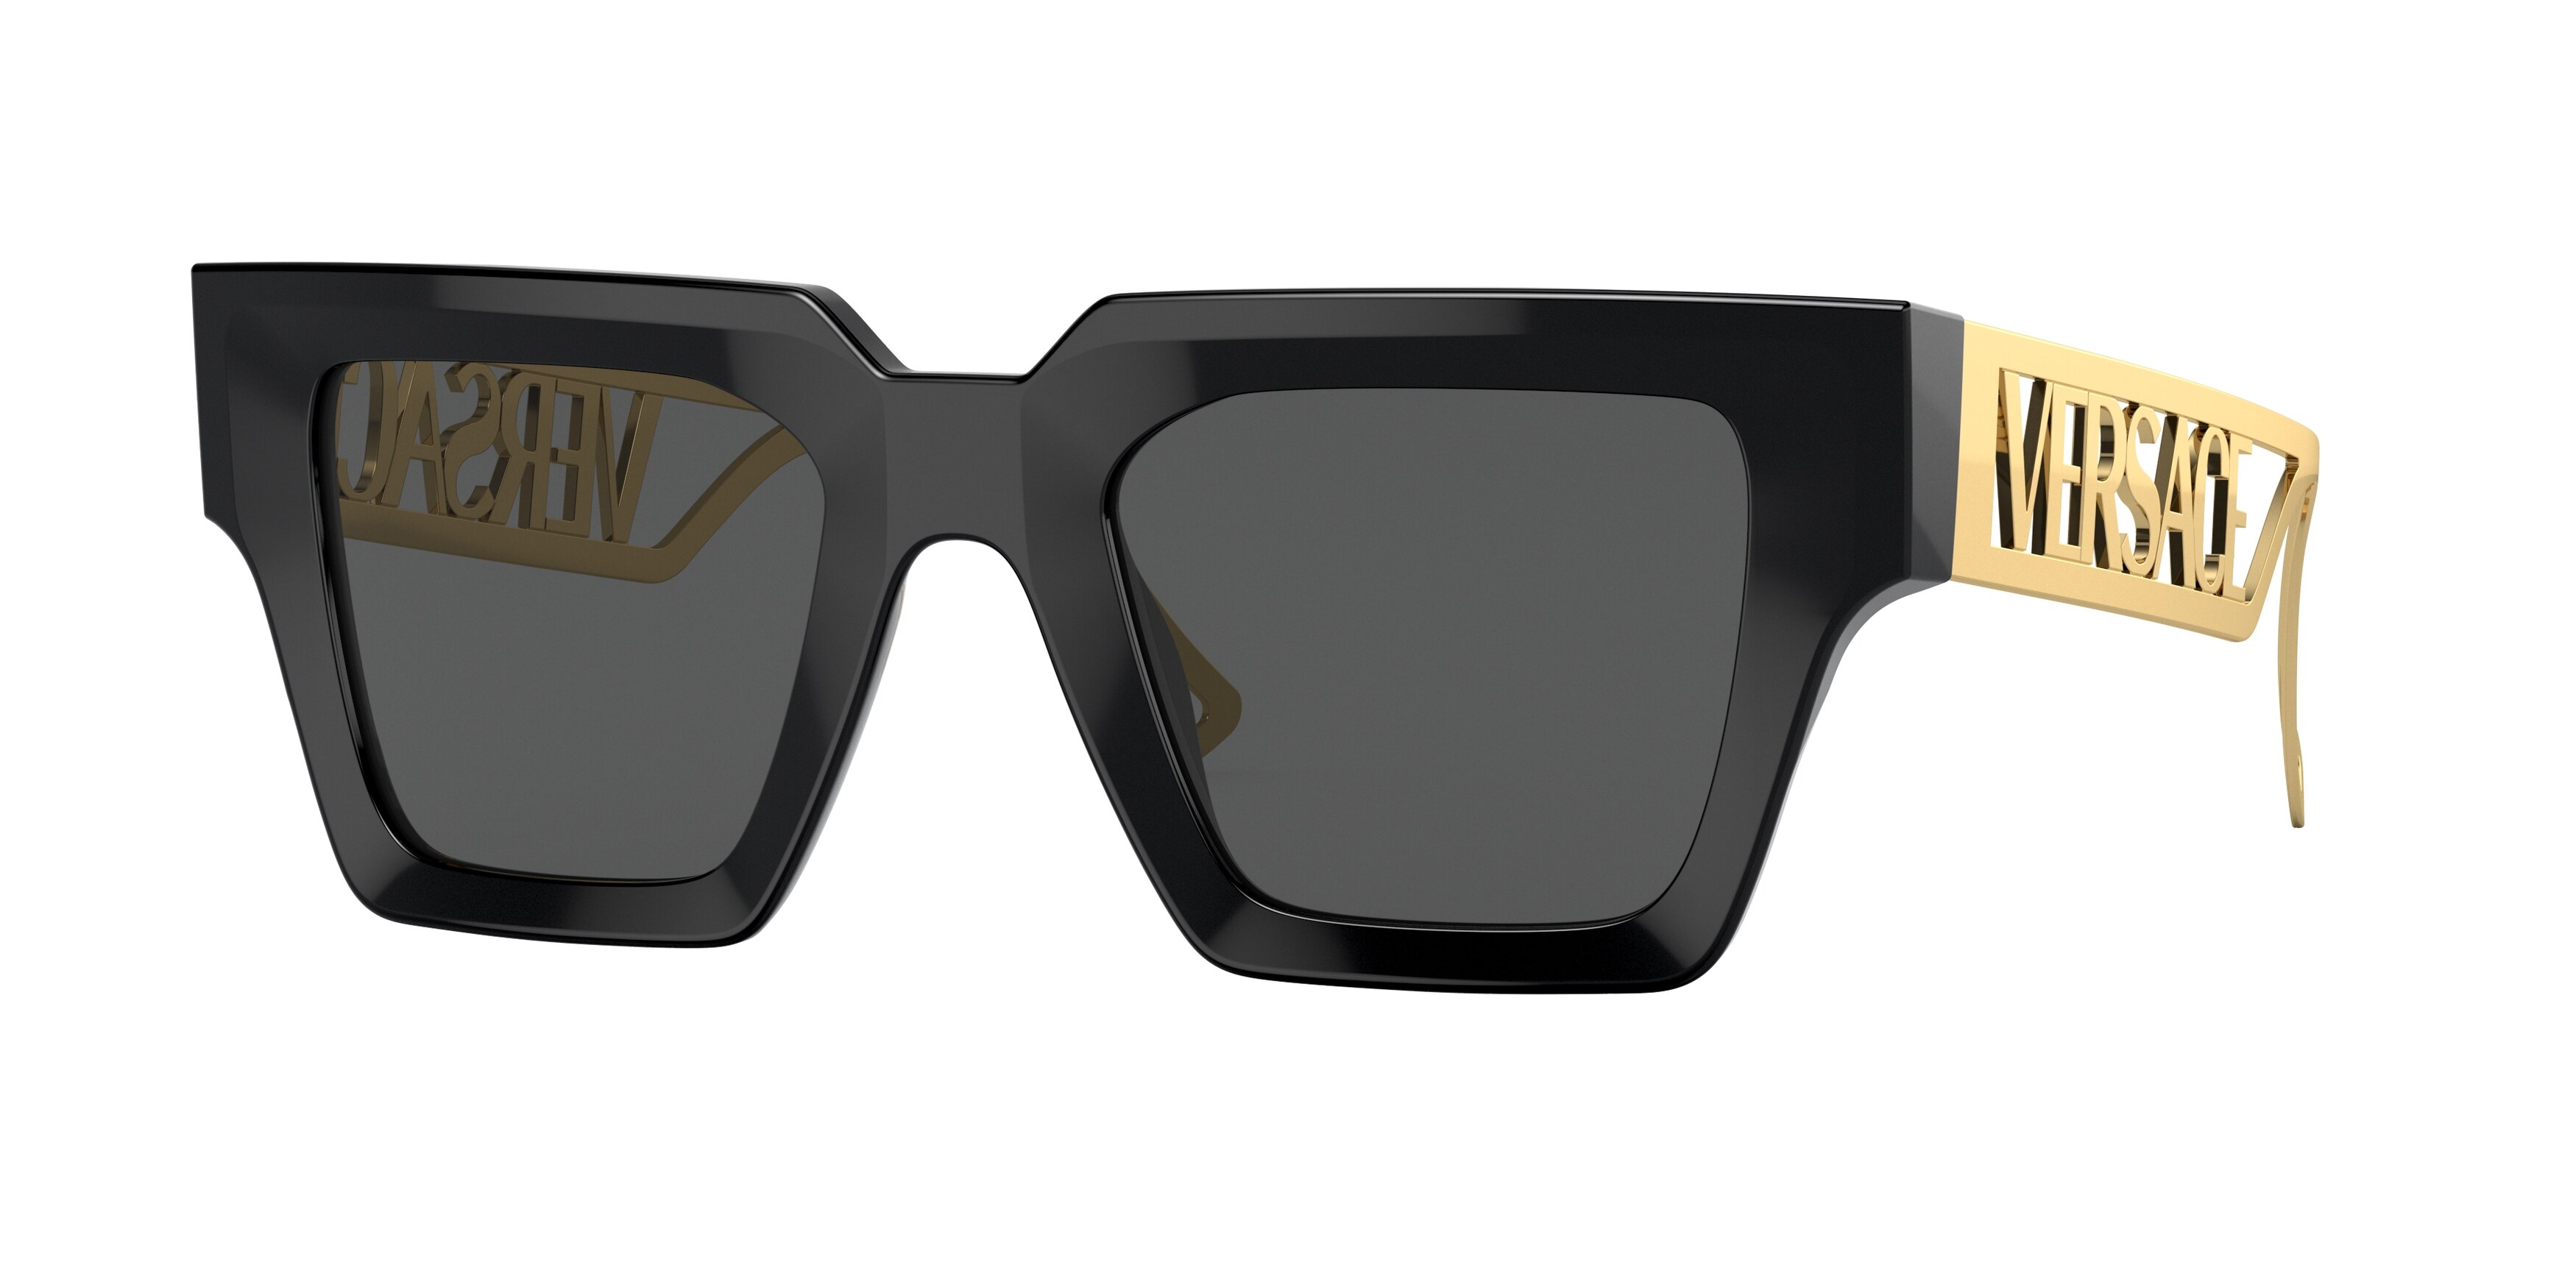 Louis Vuitton 1.1 Millionaires Sunglasses Black  Louis vuitton glasses,  Fashion sunglasses, Louis vuitton sunglasses